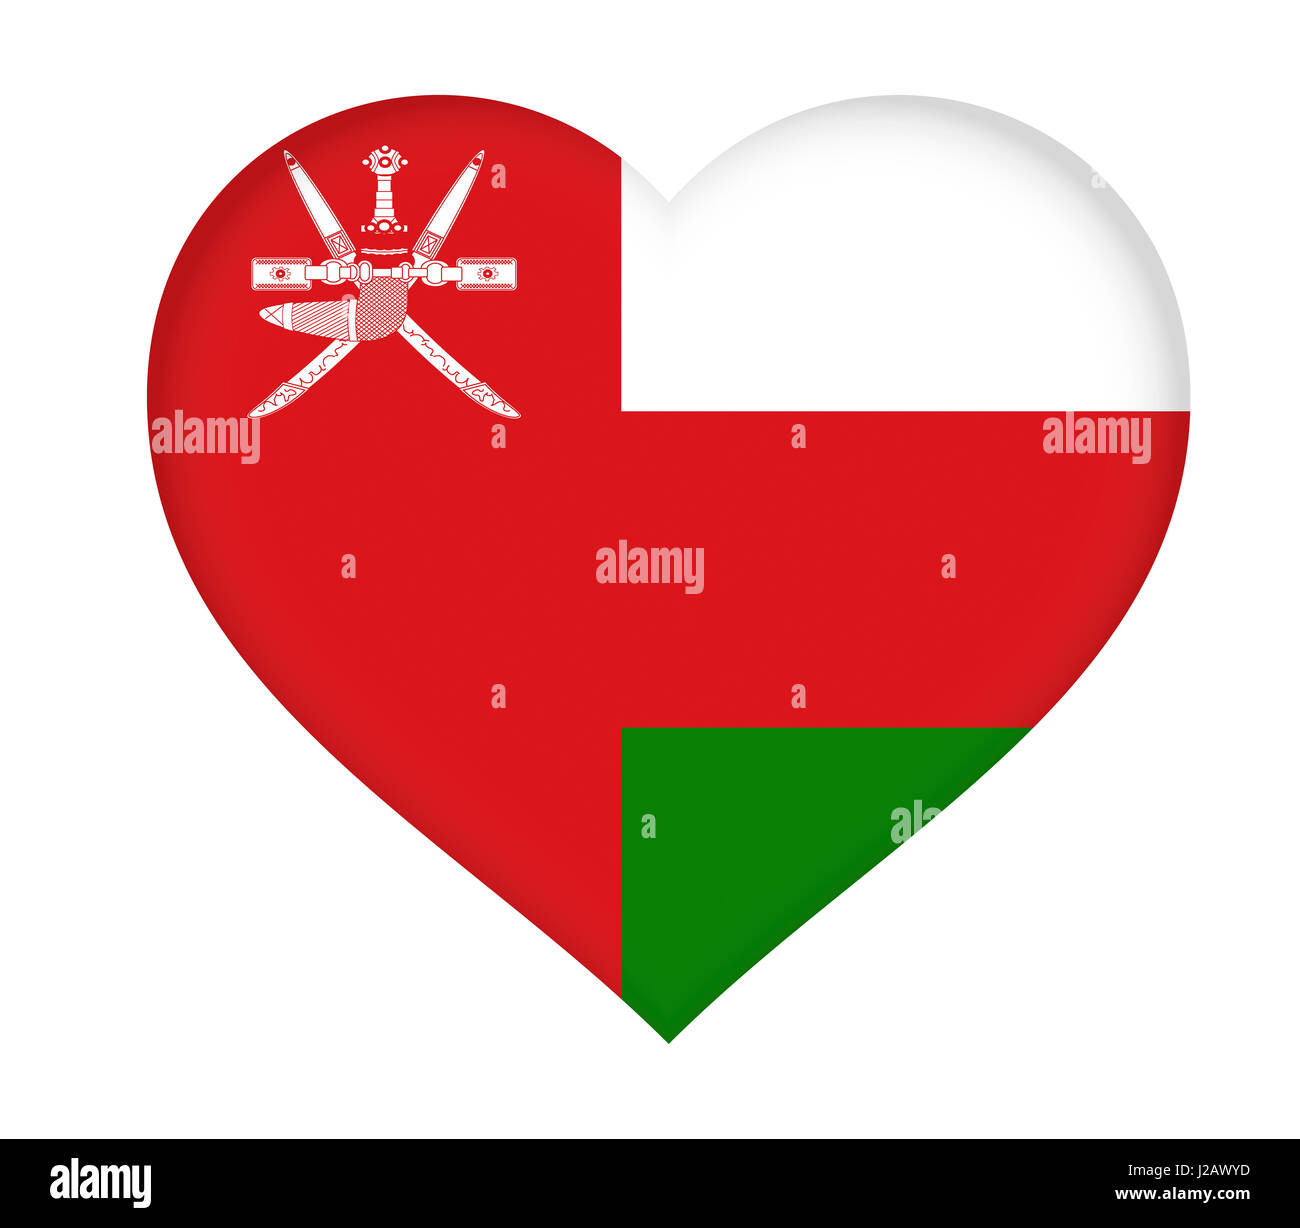 Abbildung der Flagge der Oman wie ein Herz geformt. Stockfoto